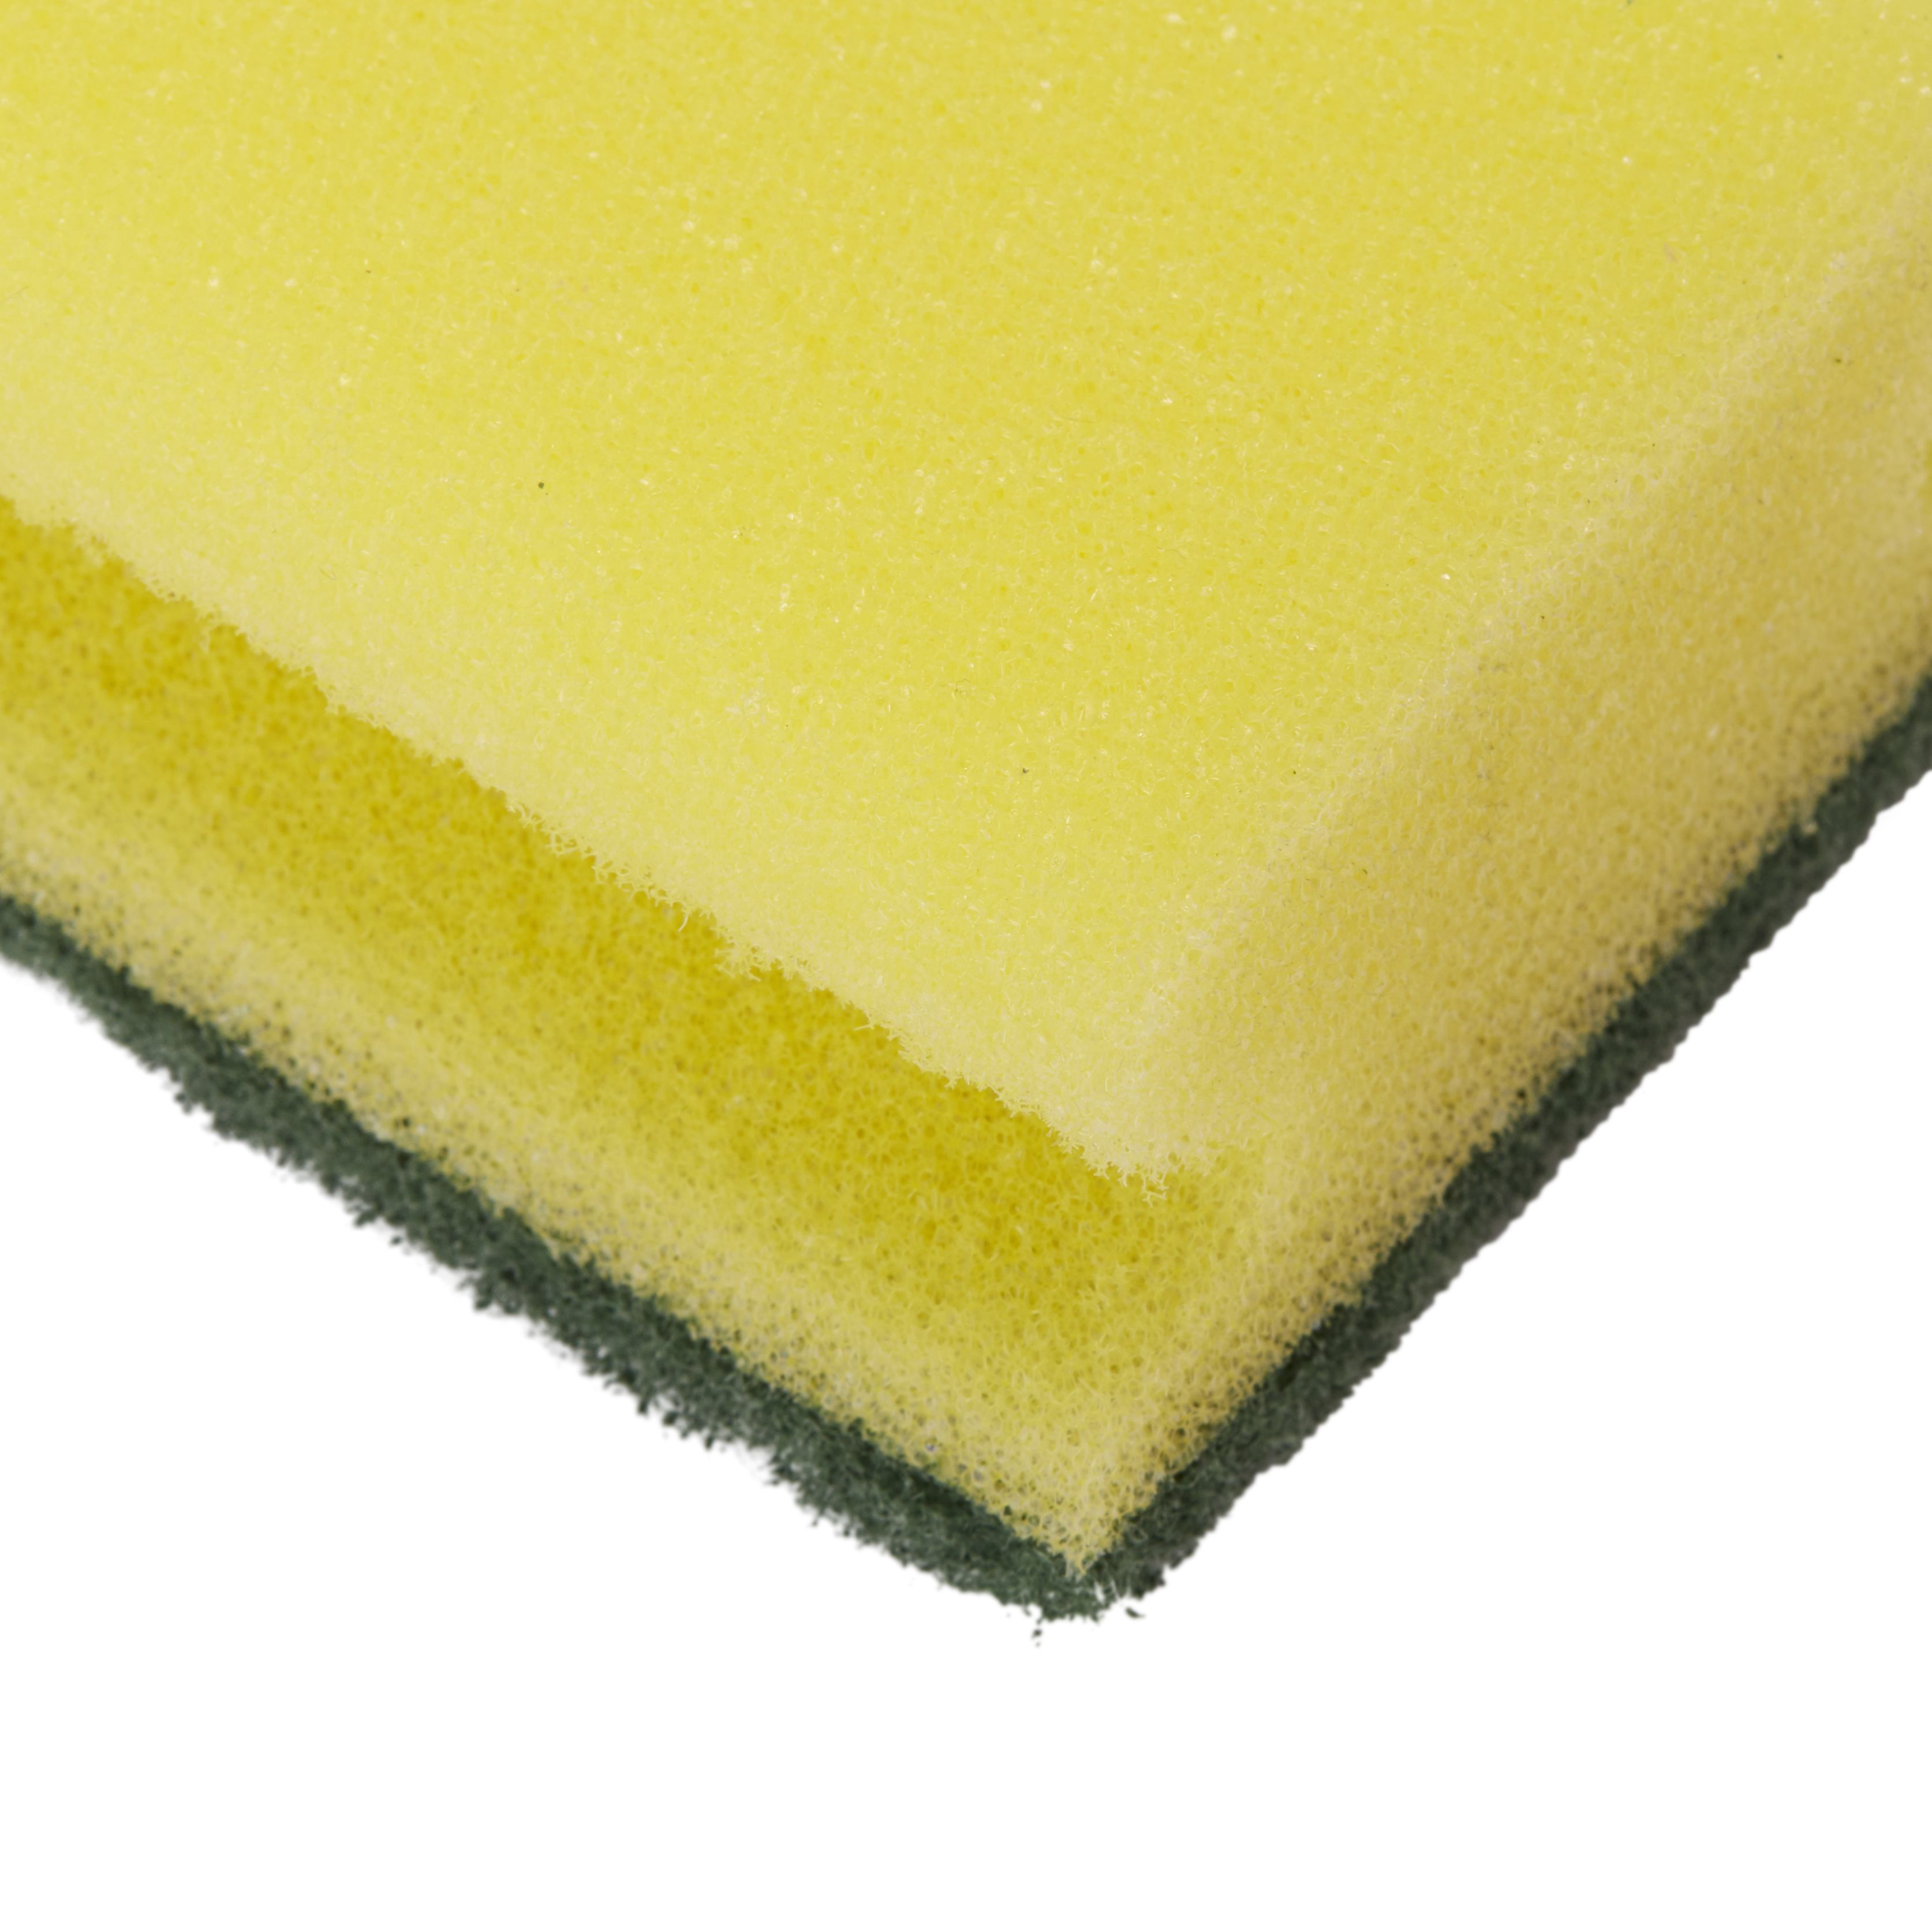 Household Synthetic sponge scourer, Pack of 3